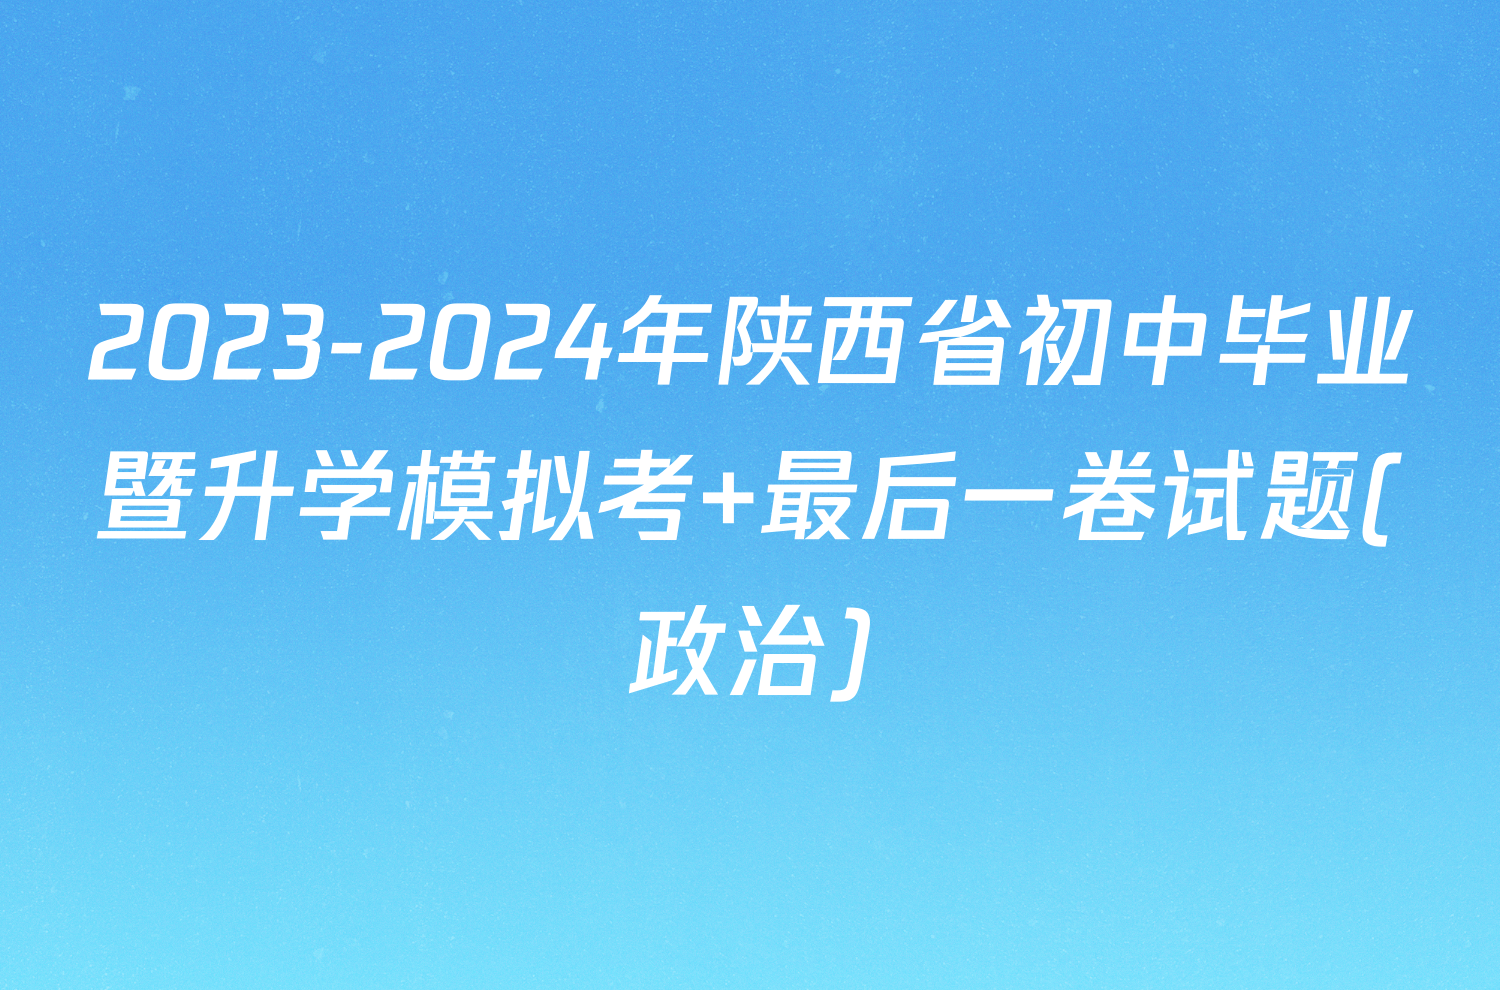 2023-2024年陕西省初中毕业暨升学模拟考 最后一卷试题(政治)